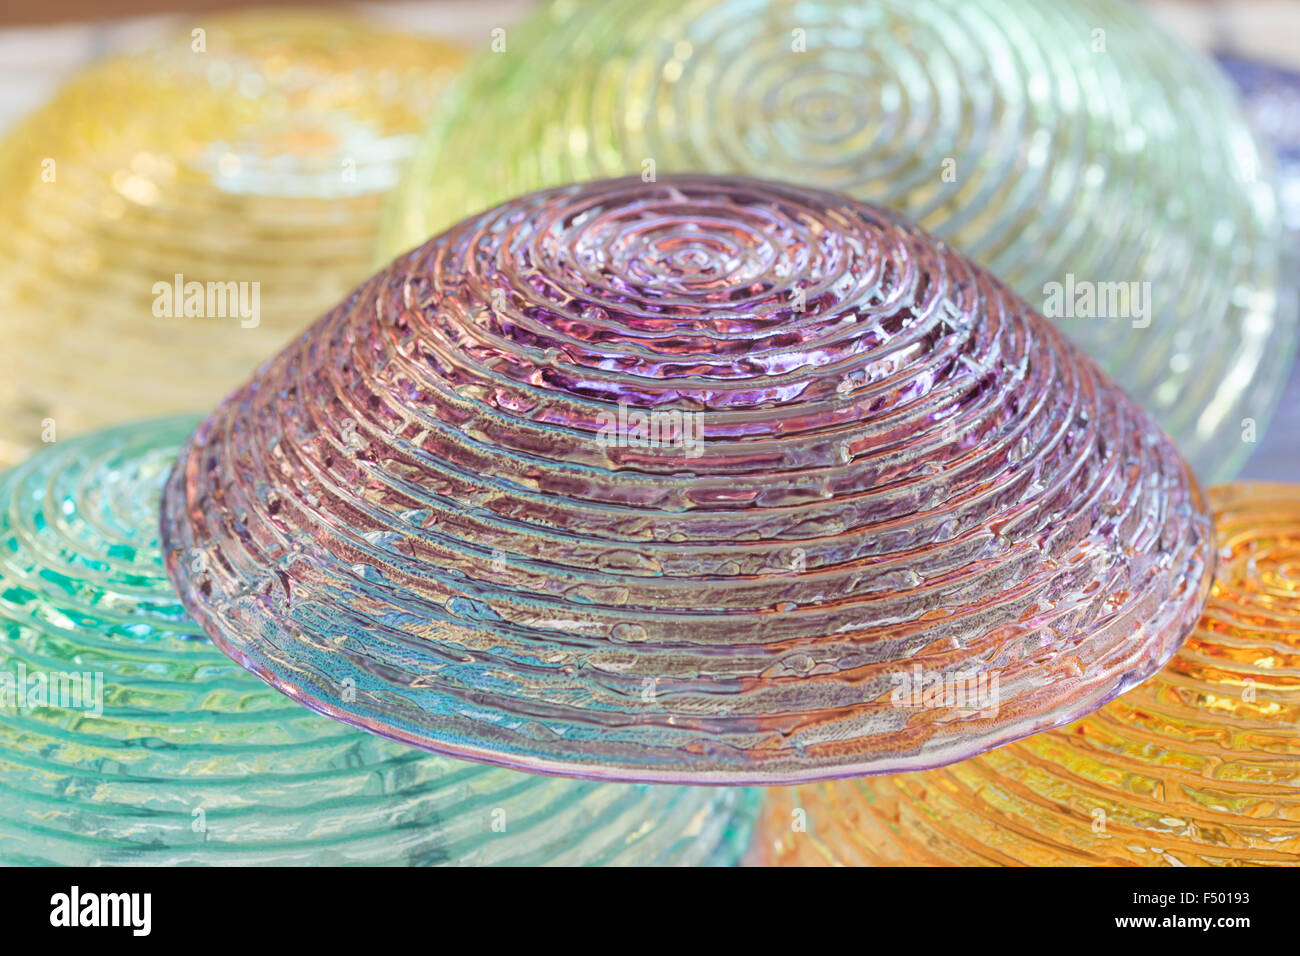 Détail de bol de verre coloré à l'envers Banque D'Images